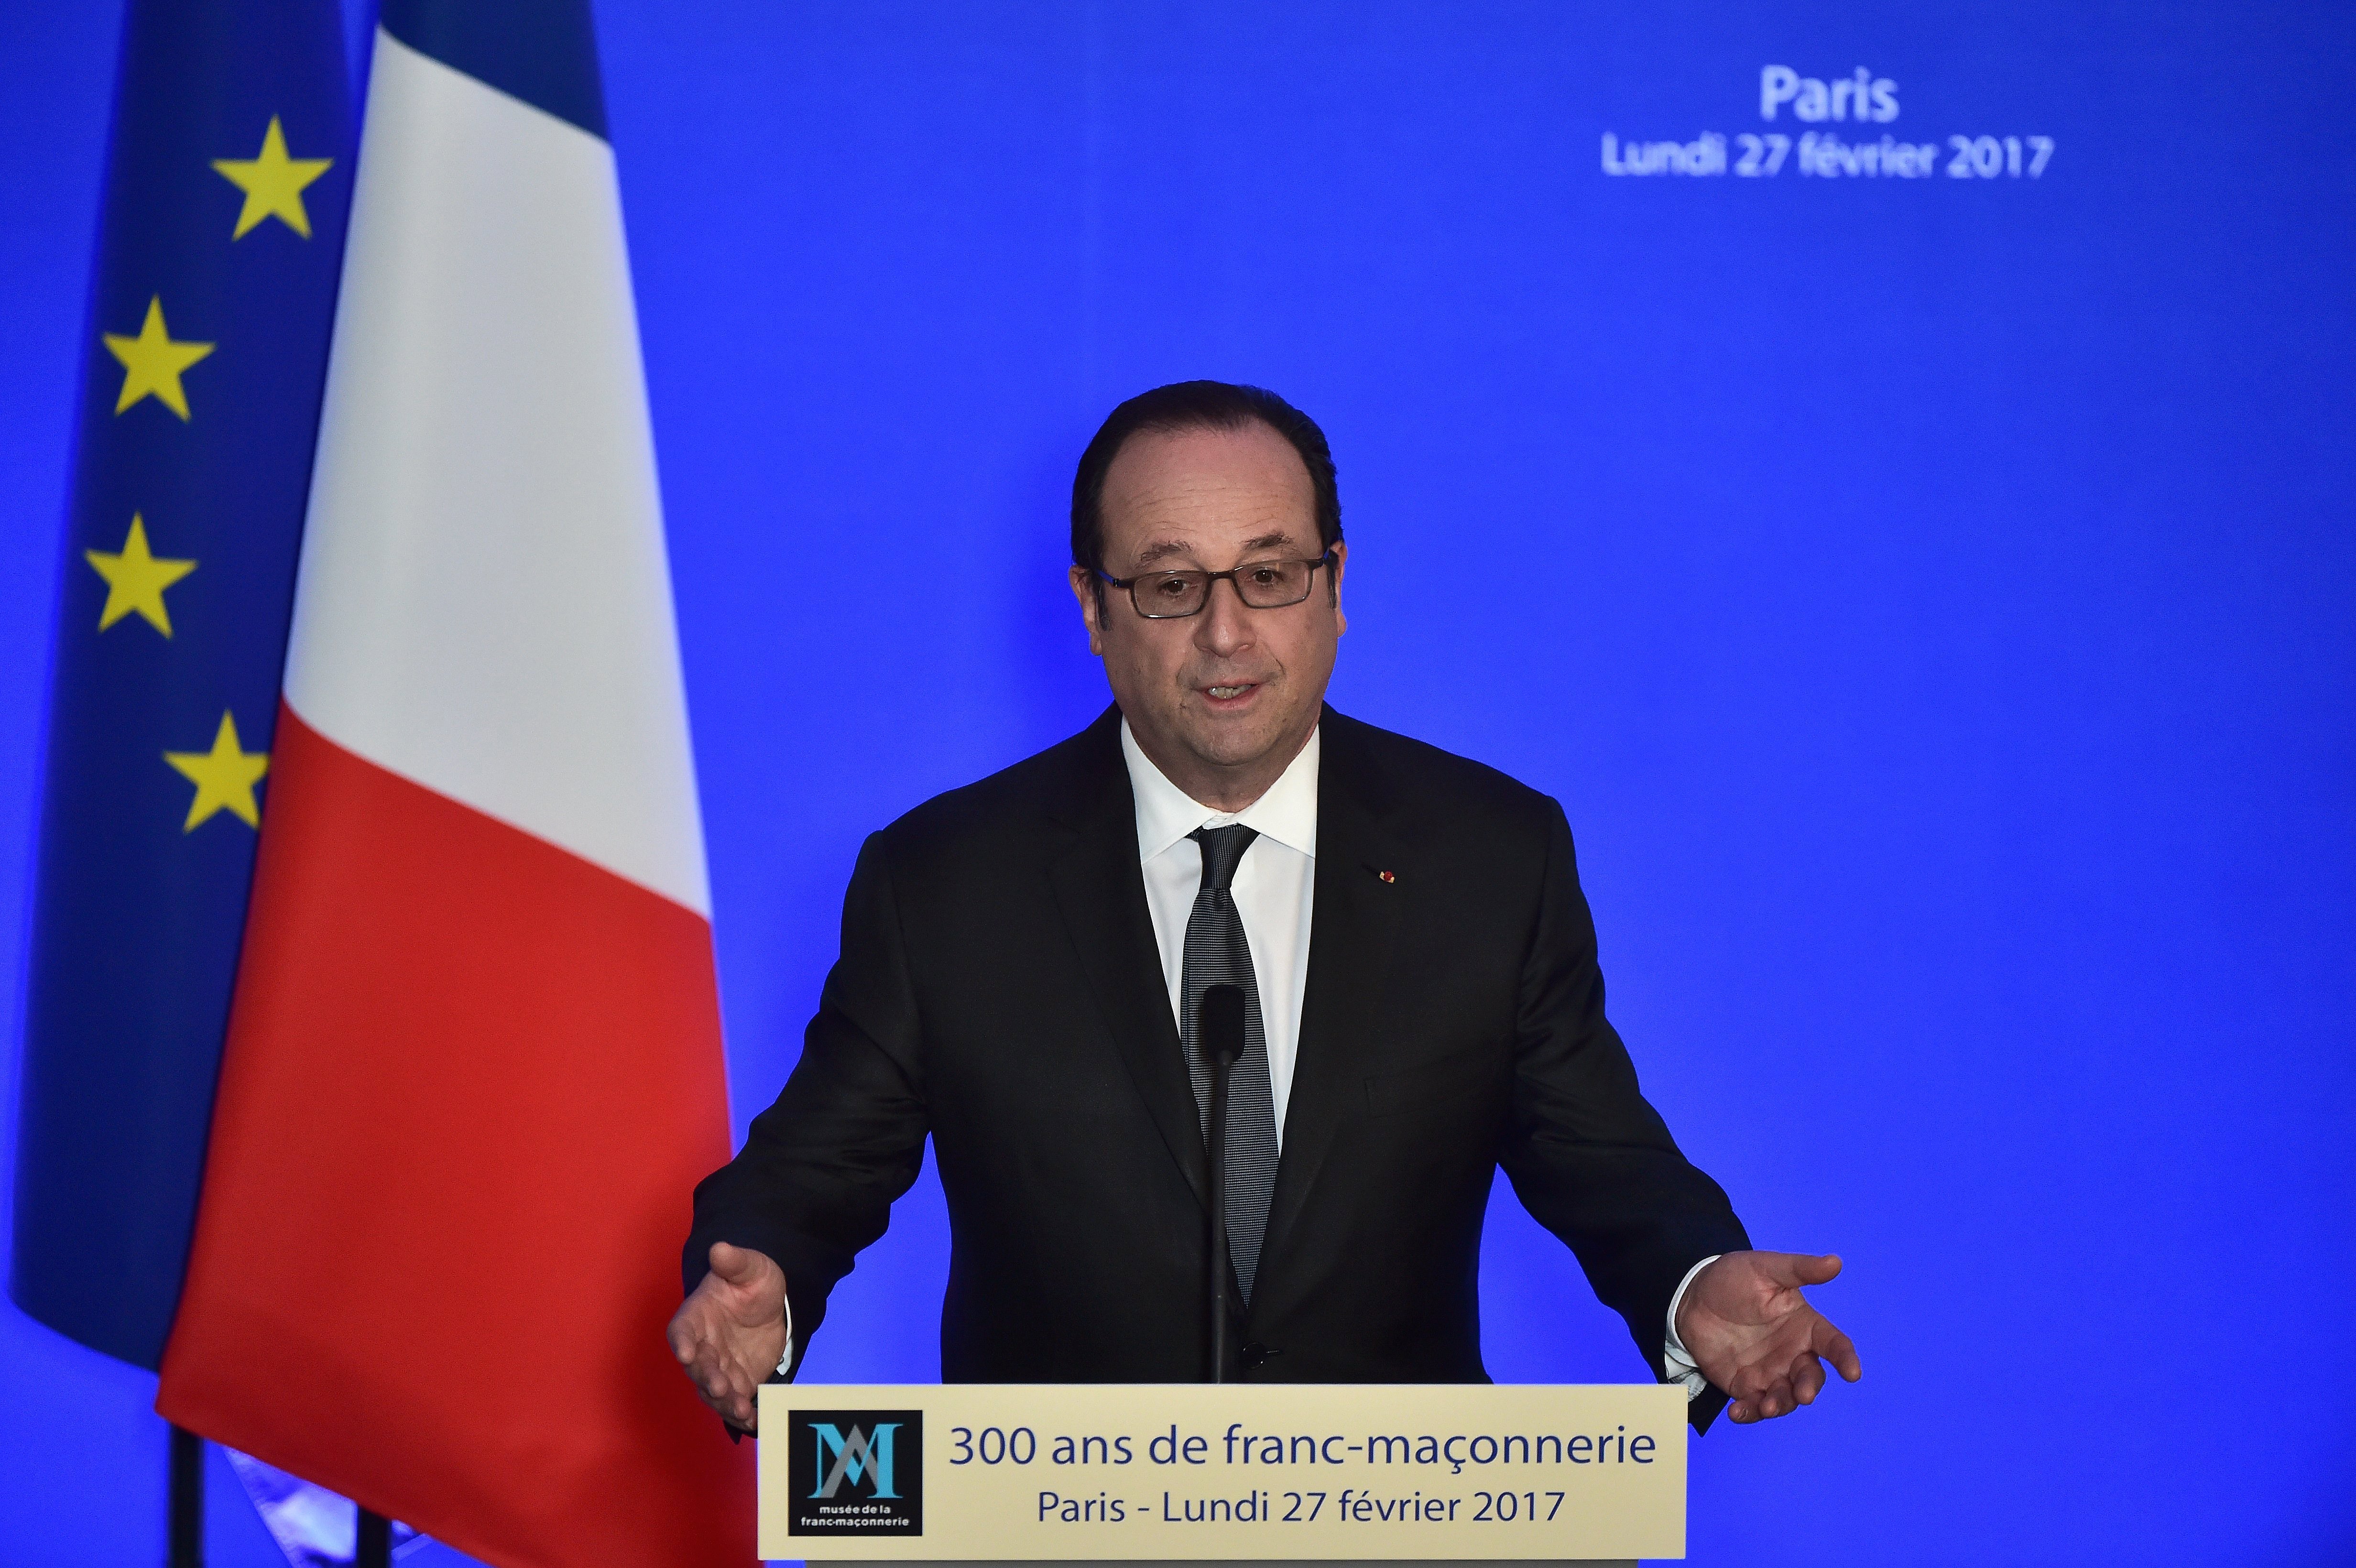 Hollande pide resolver el conflicto catalán "por las vías democráticas"